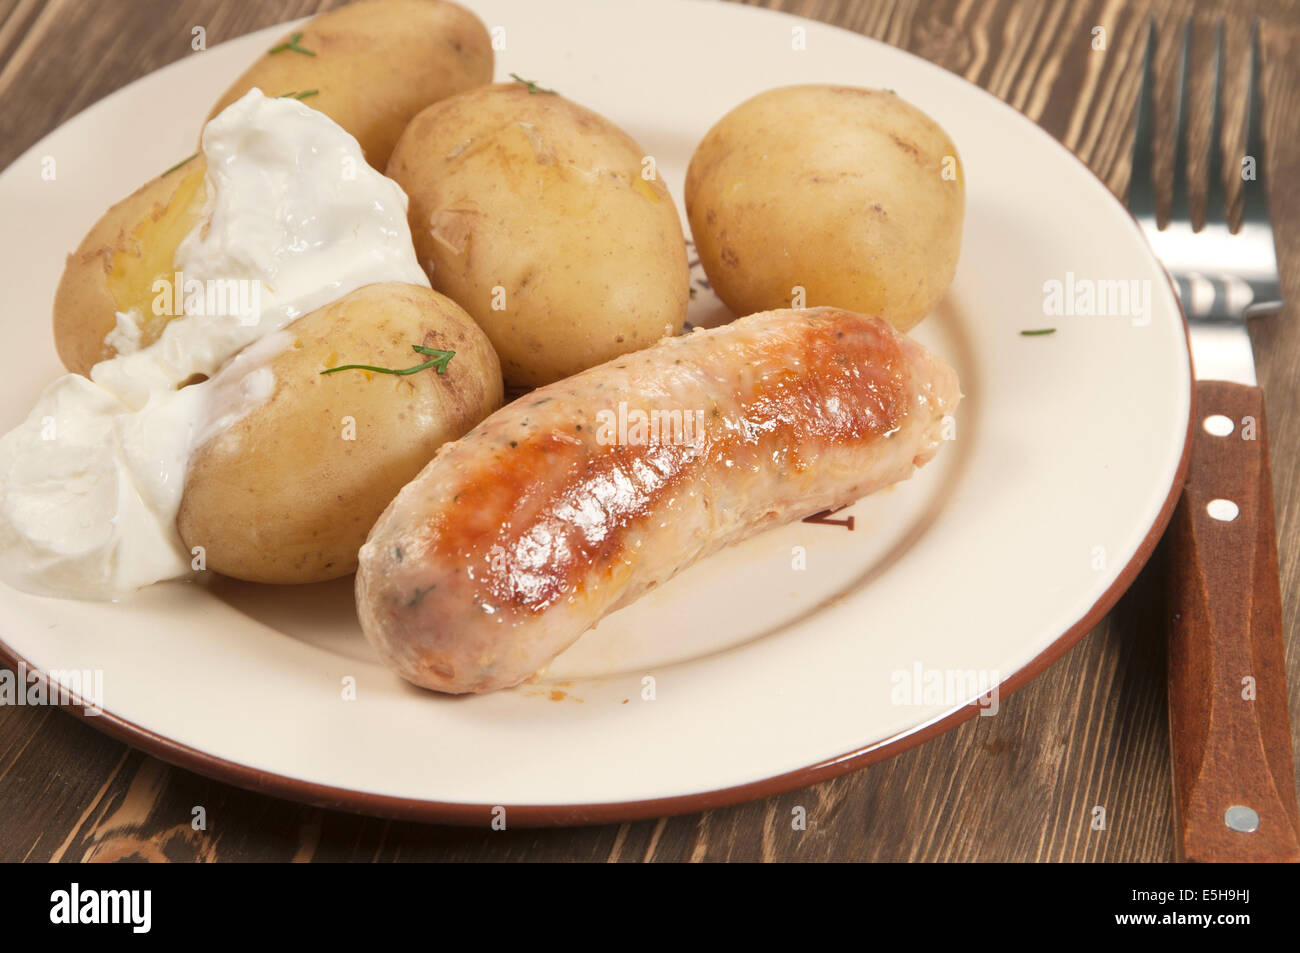 Junge Kartoffeln mit Sauerrahm und Wurst Stockfotografie - Alamy